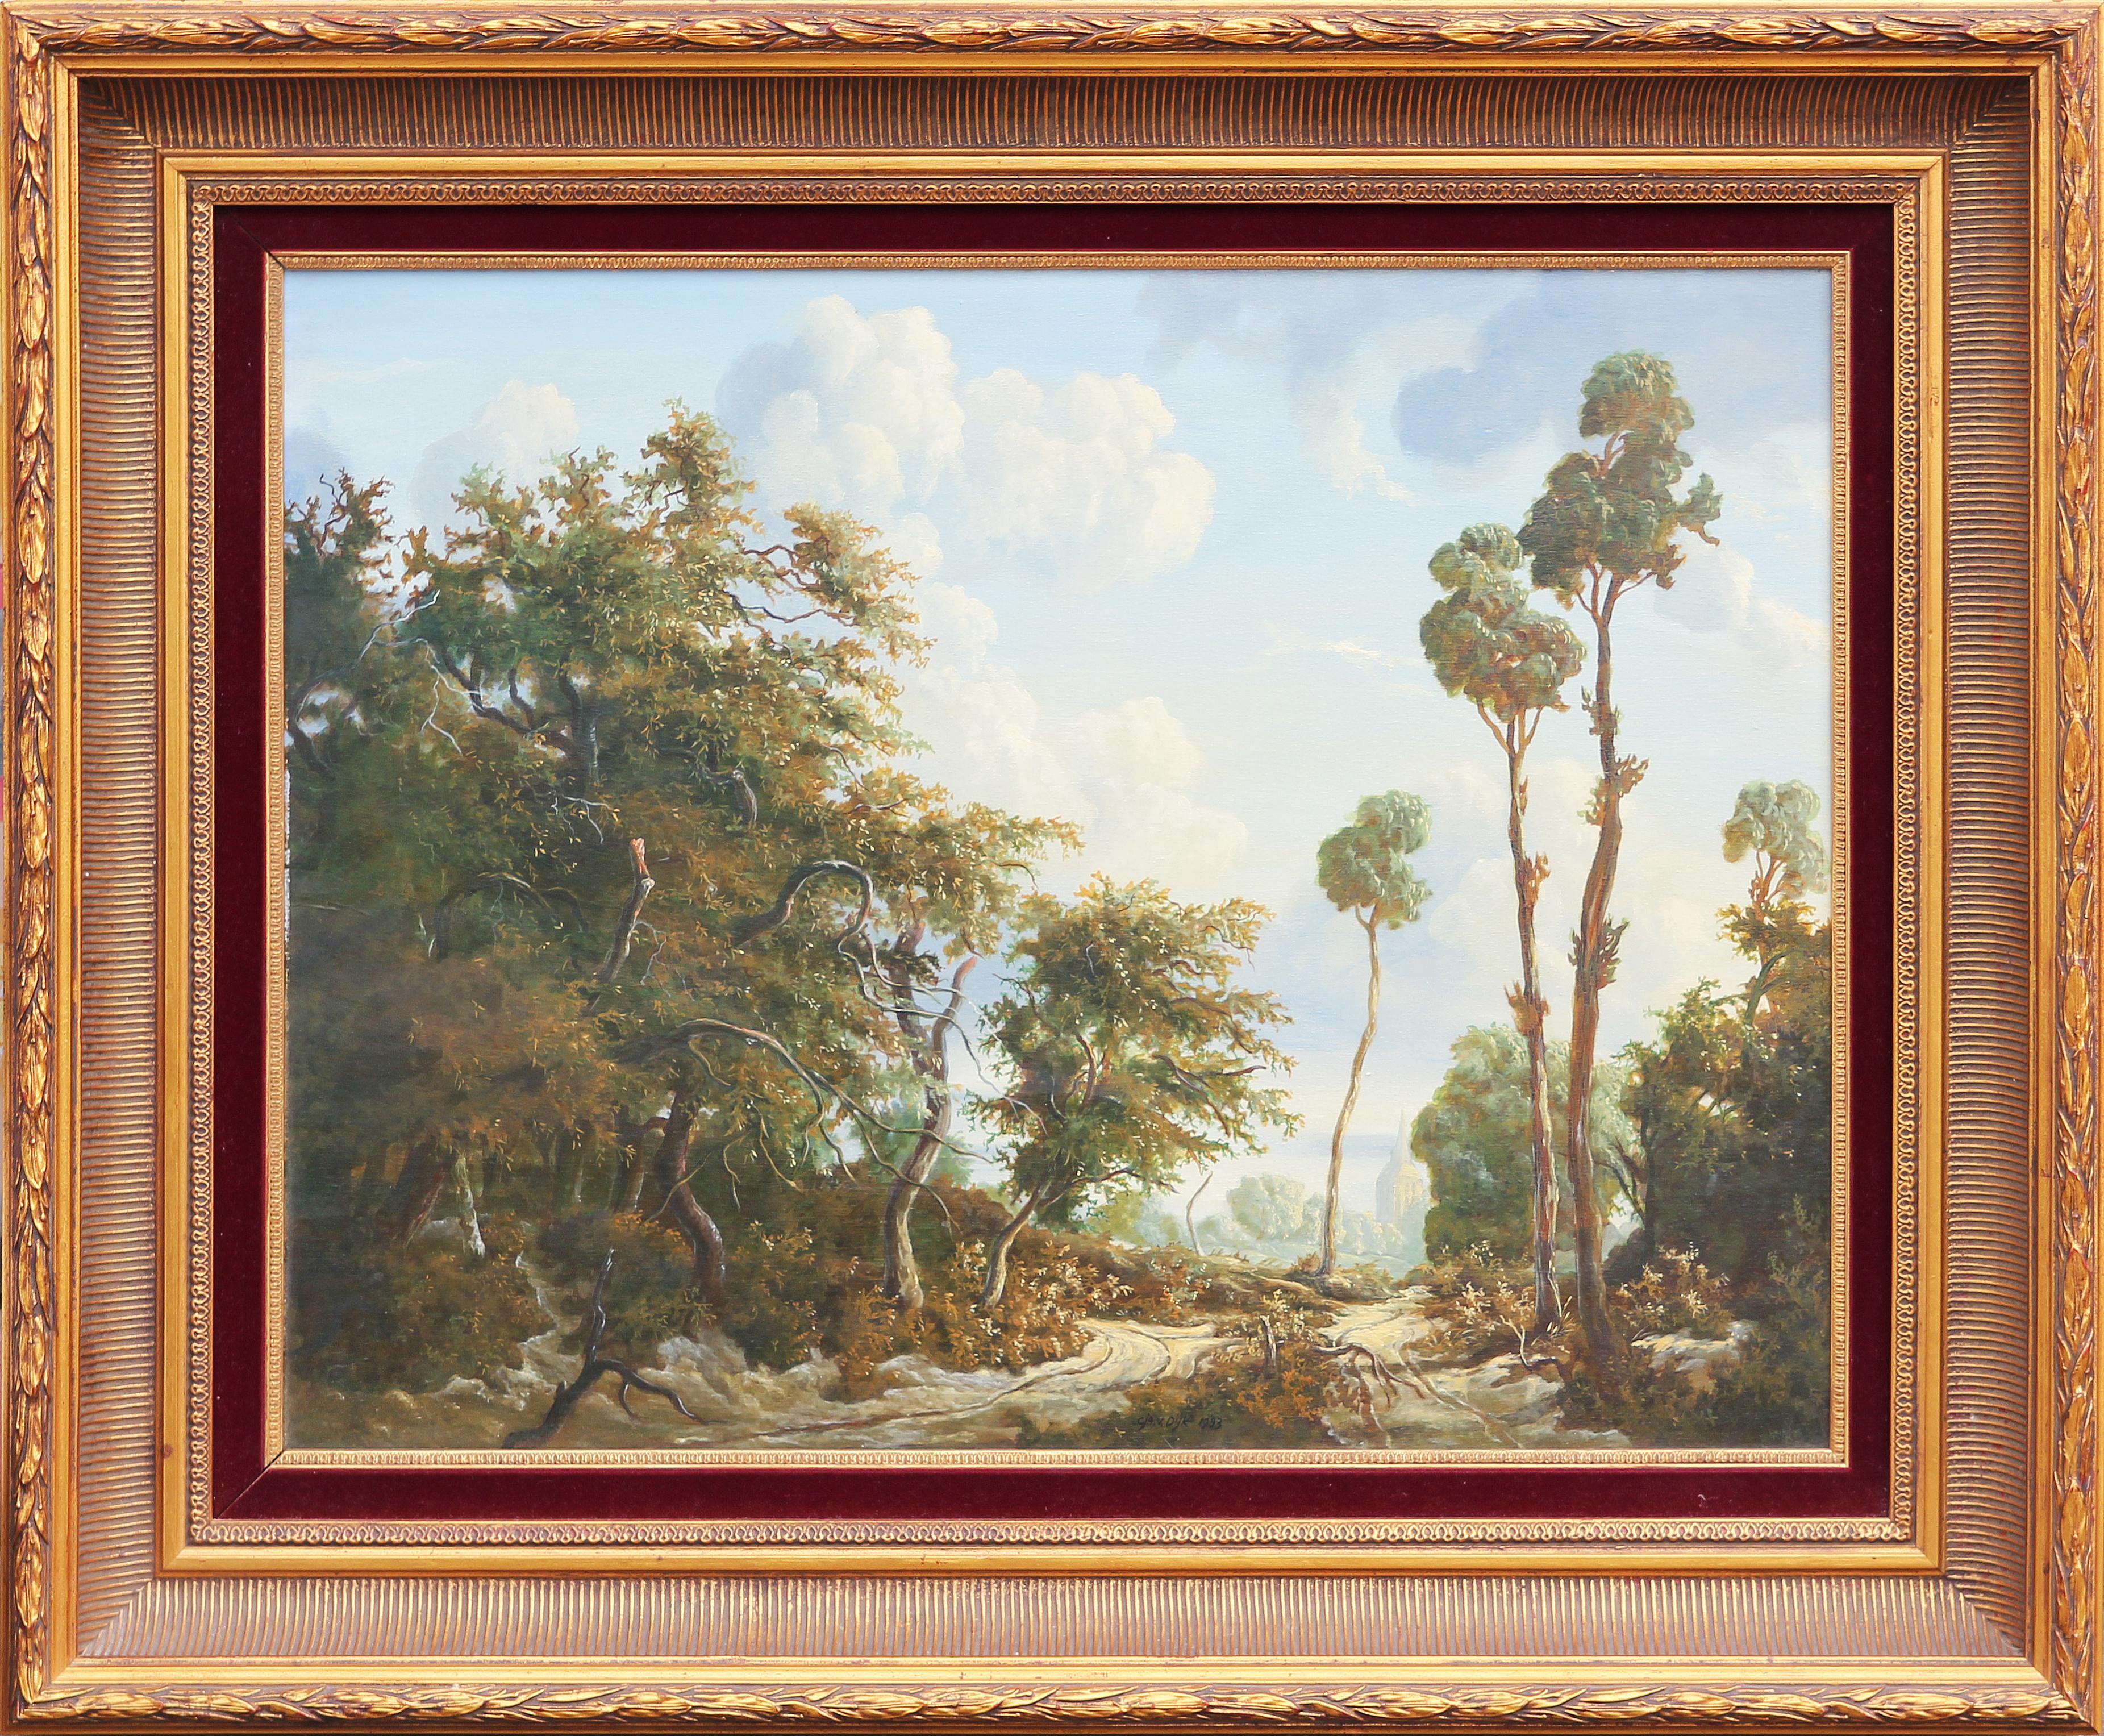 Cja. V. Dijk Landscape Painting – Natürliches, naturalistisches, romantisches Landschaftsgemälde im romantischen Stil eines niederländischen Waldes